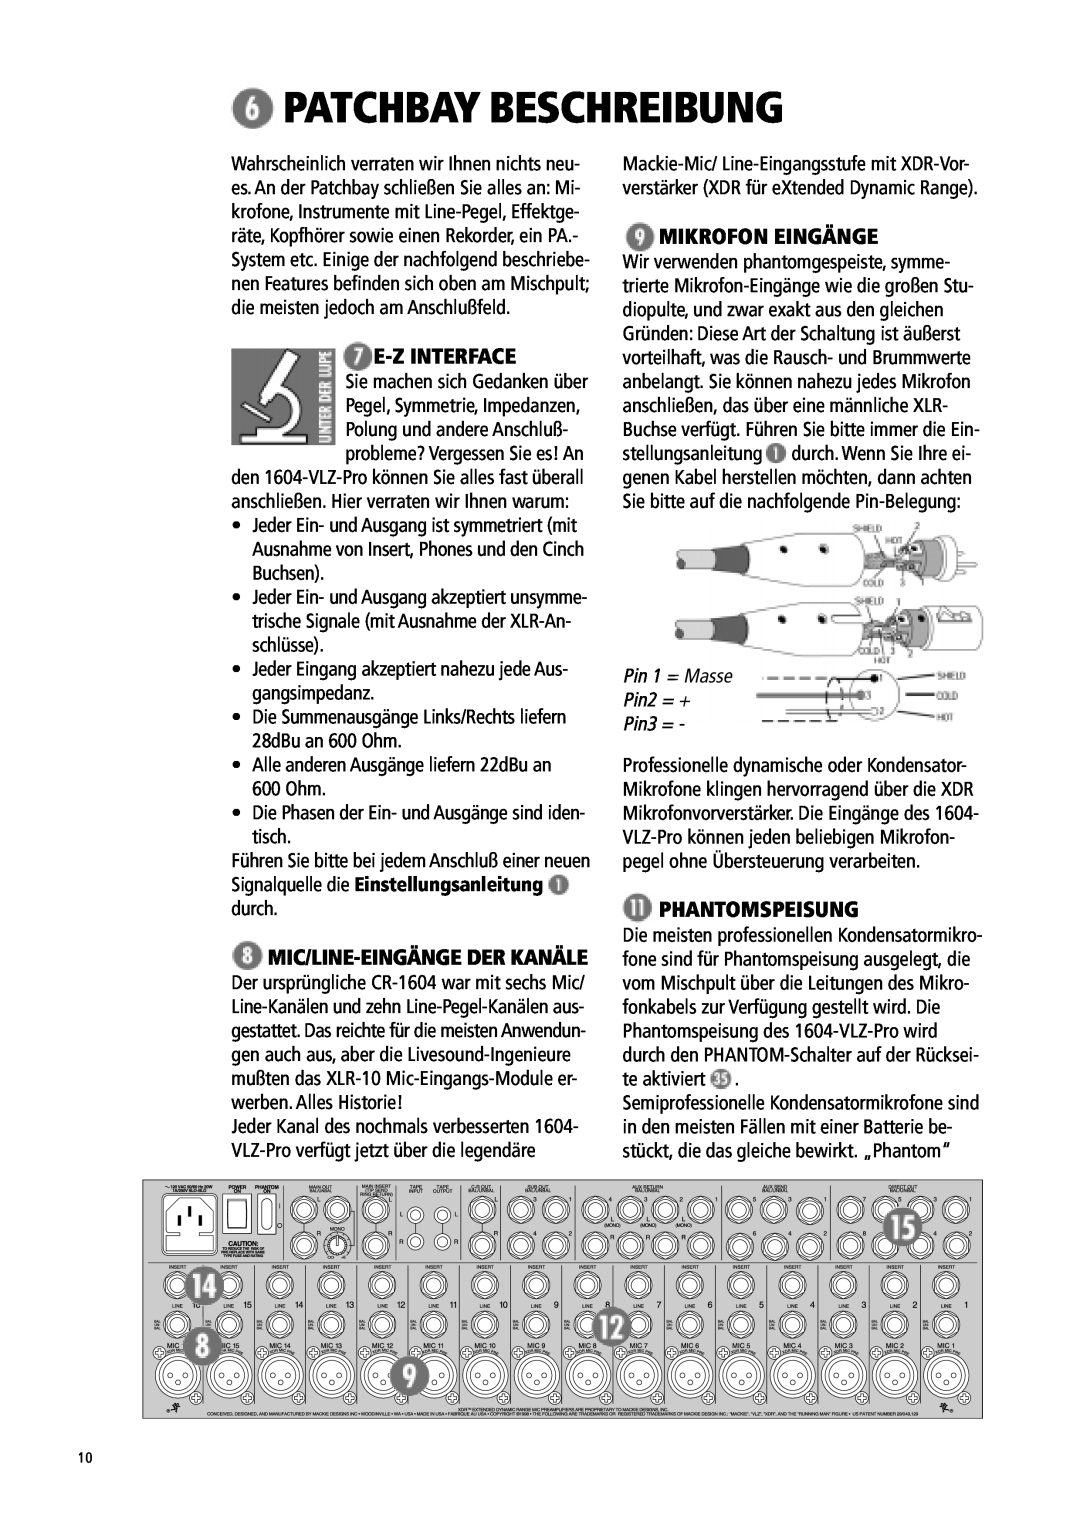 Mackie 1604-VLZ manual Patchbay Beschreibung, E-Z Interface, Mikrofon Eingänge, Phantomspeisung, tisch 